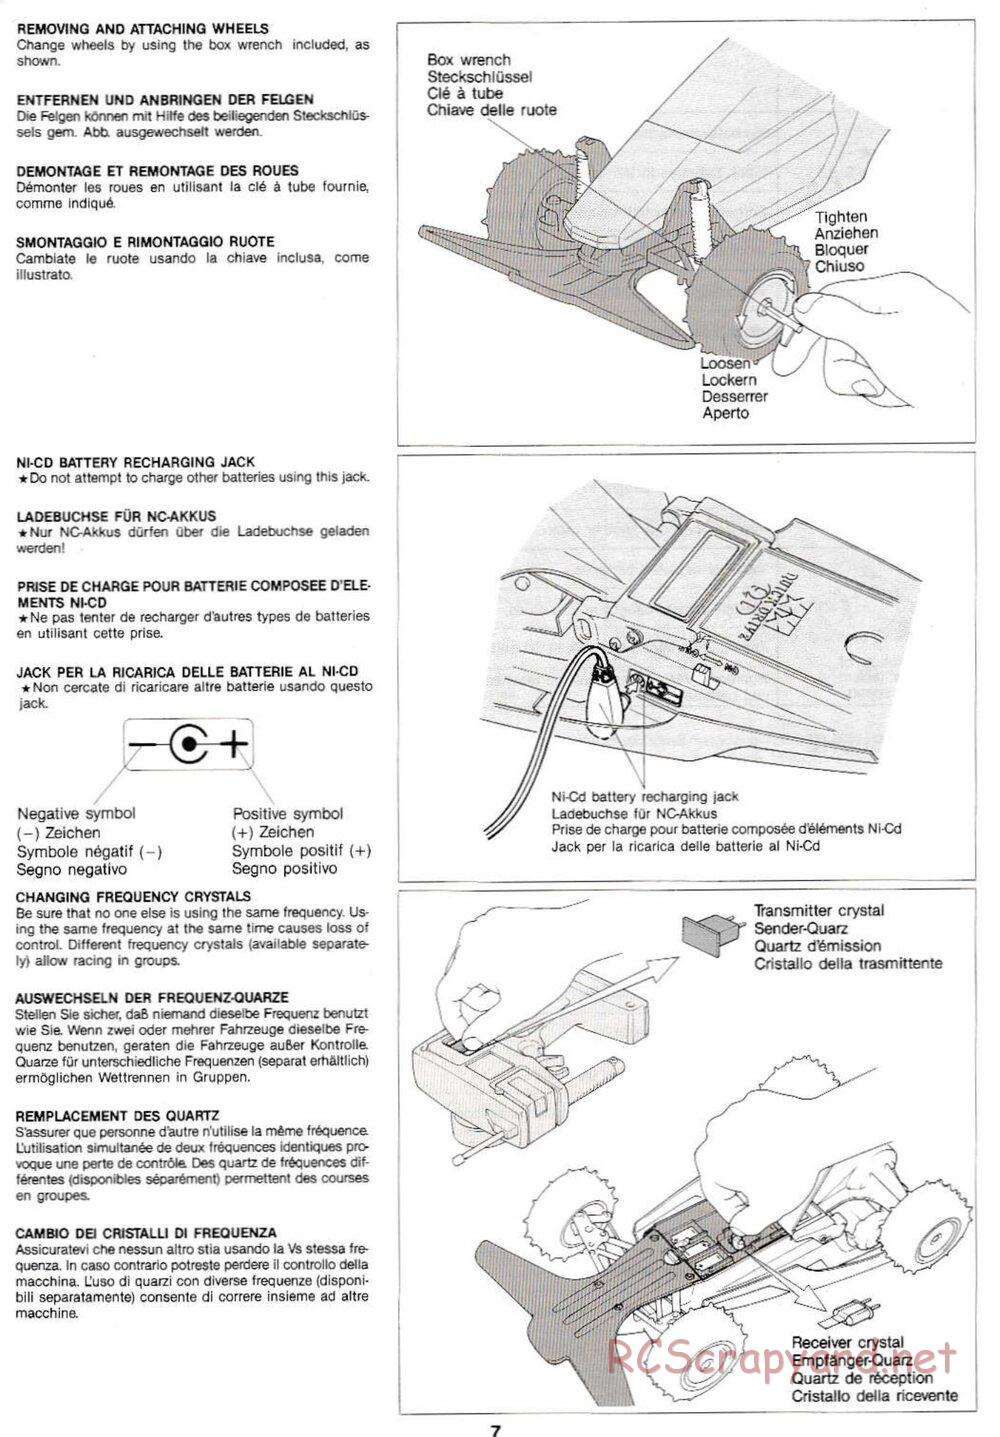 Tamiya - Super Sabre QD Chassis - Manual - Page 7